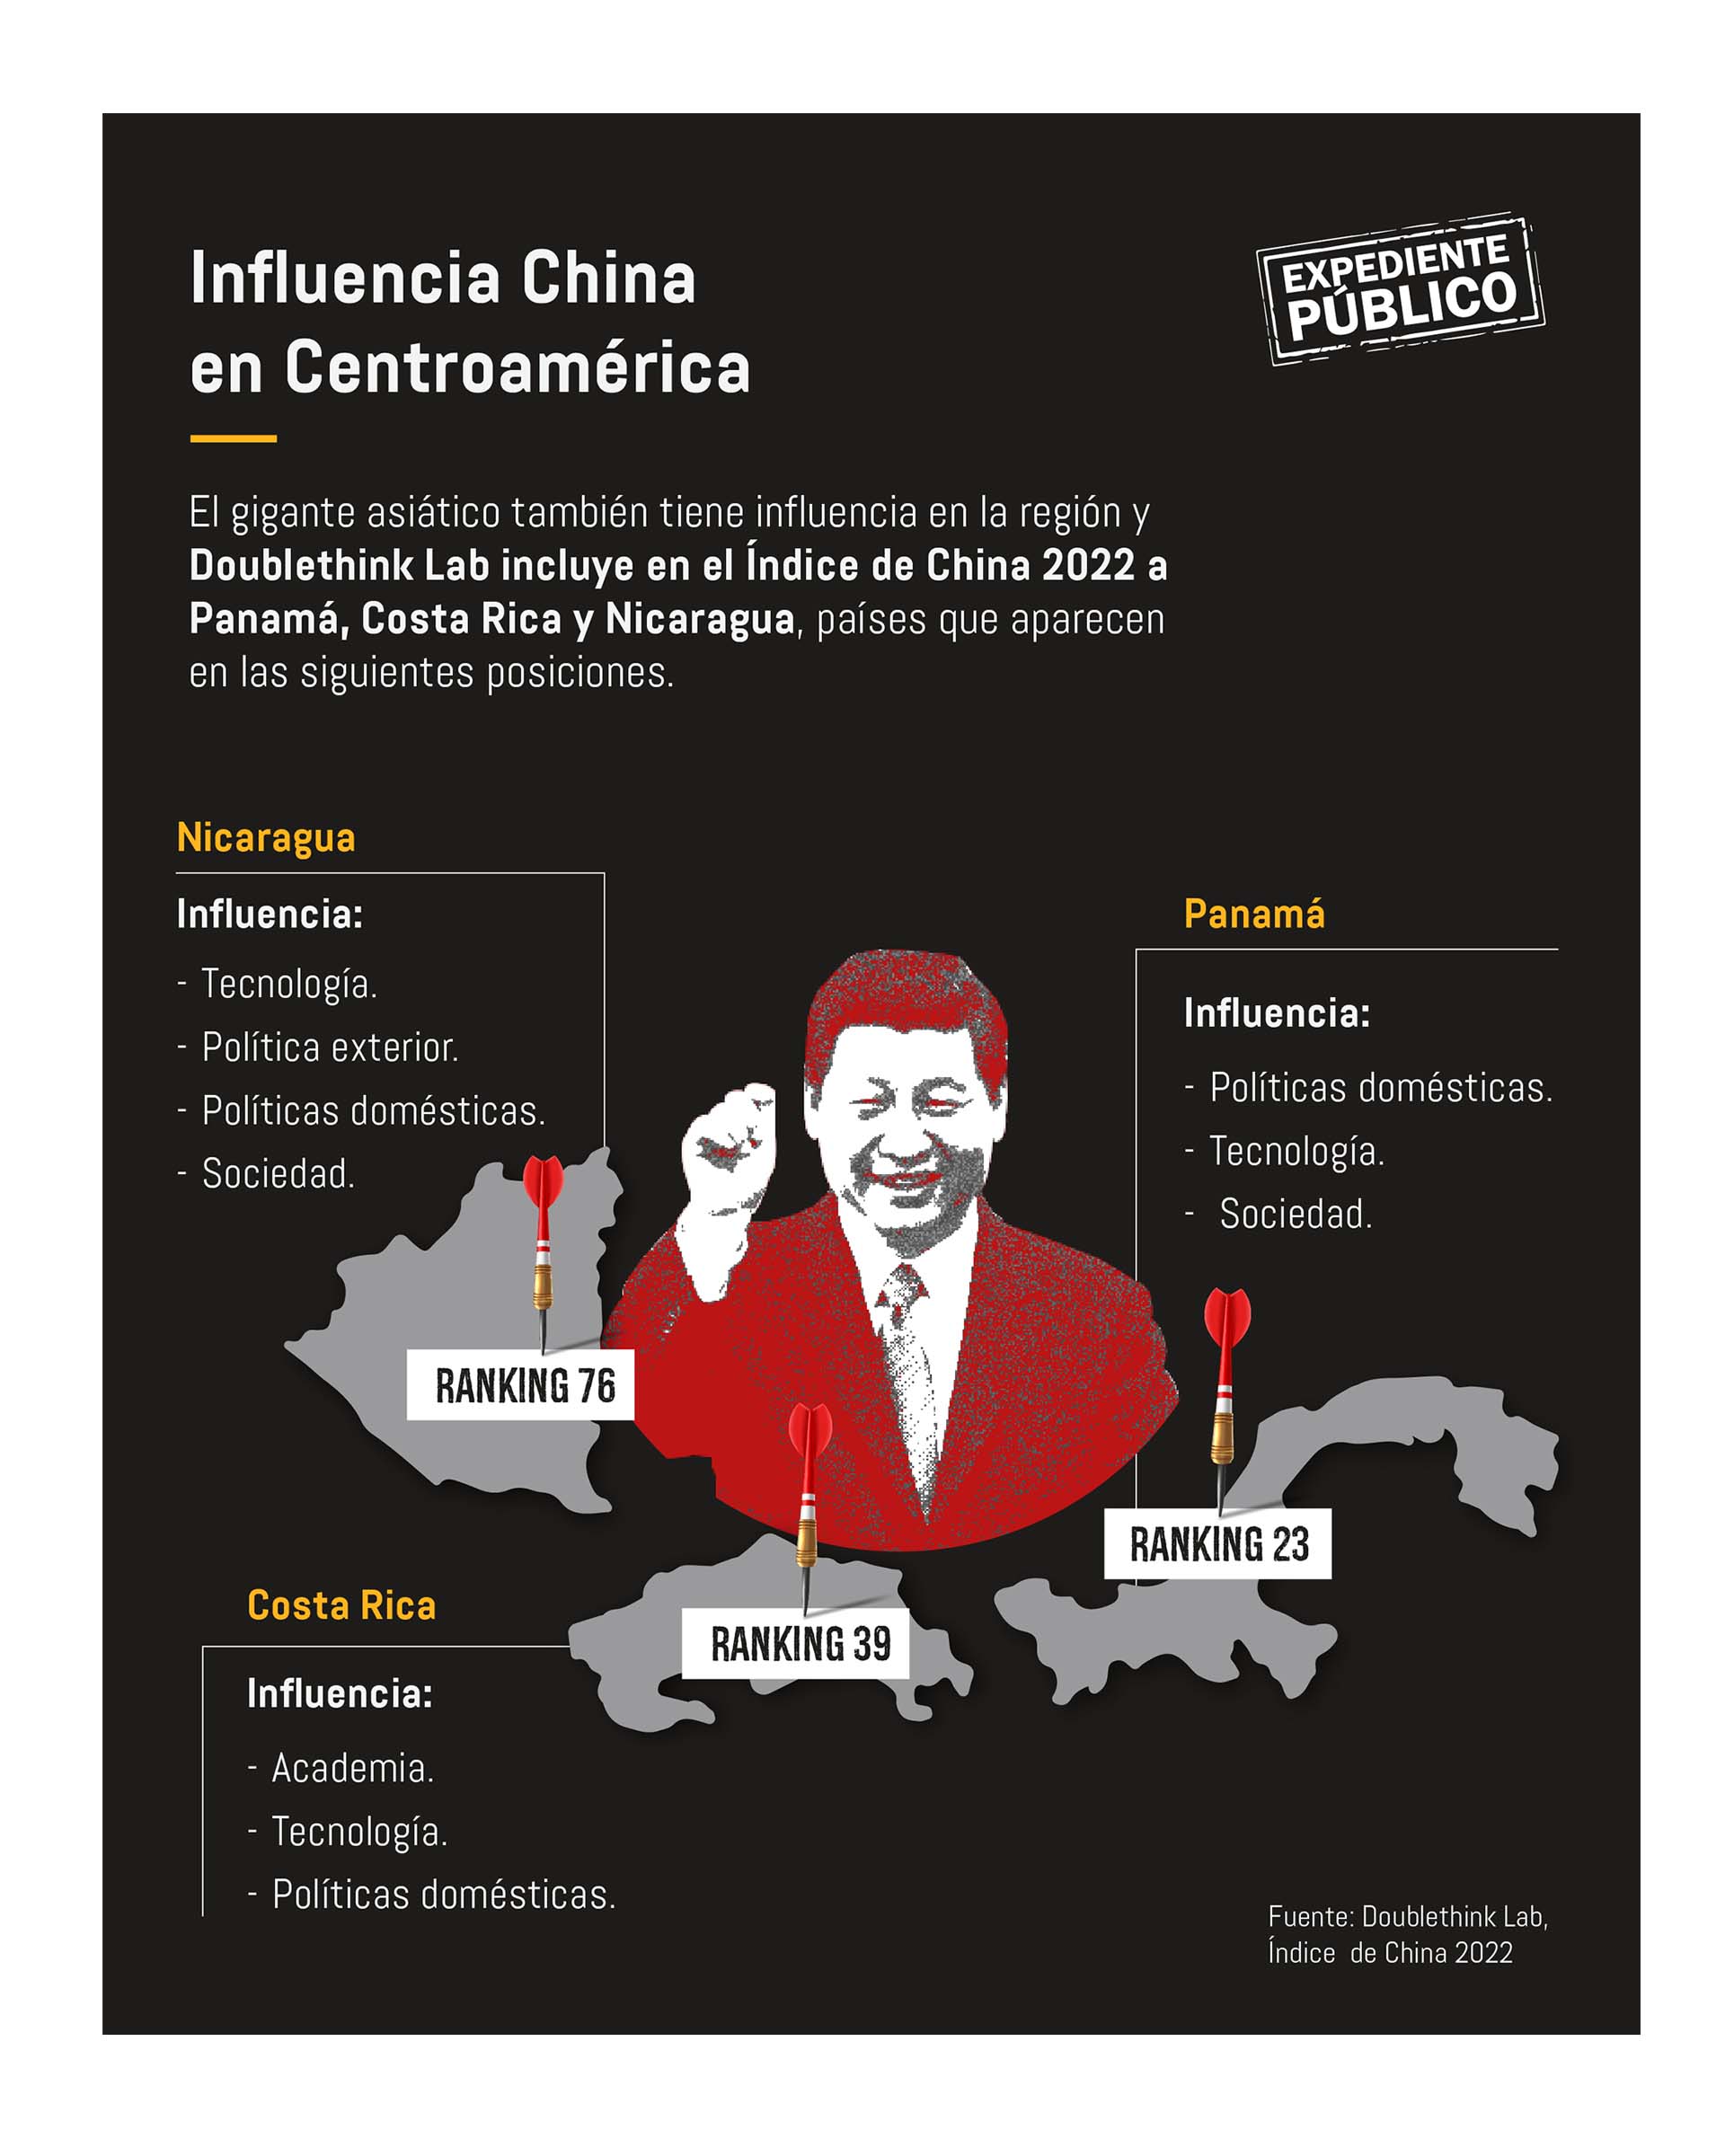 La influencia de China en Centroamérica